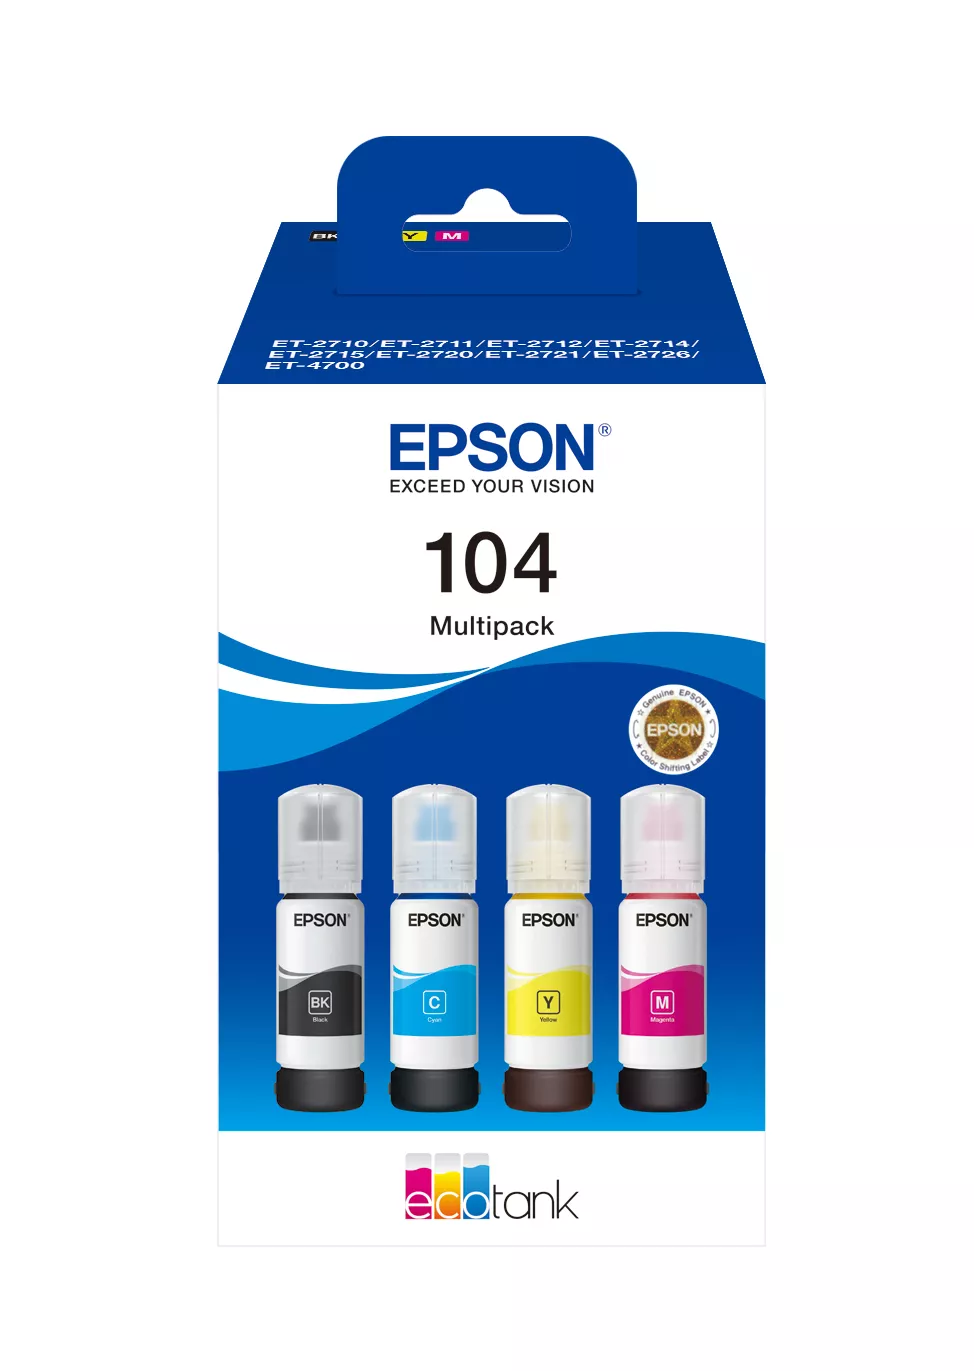 Revendeur officiel EPSON 104 EcoTank 4-colour Multipack